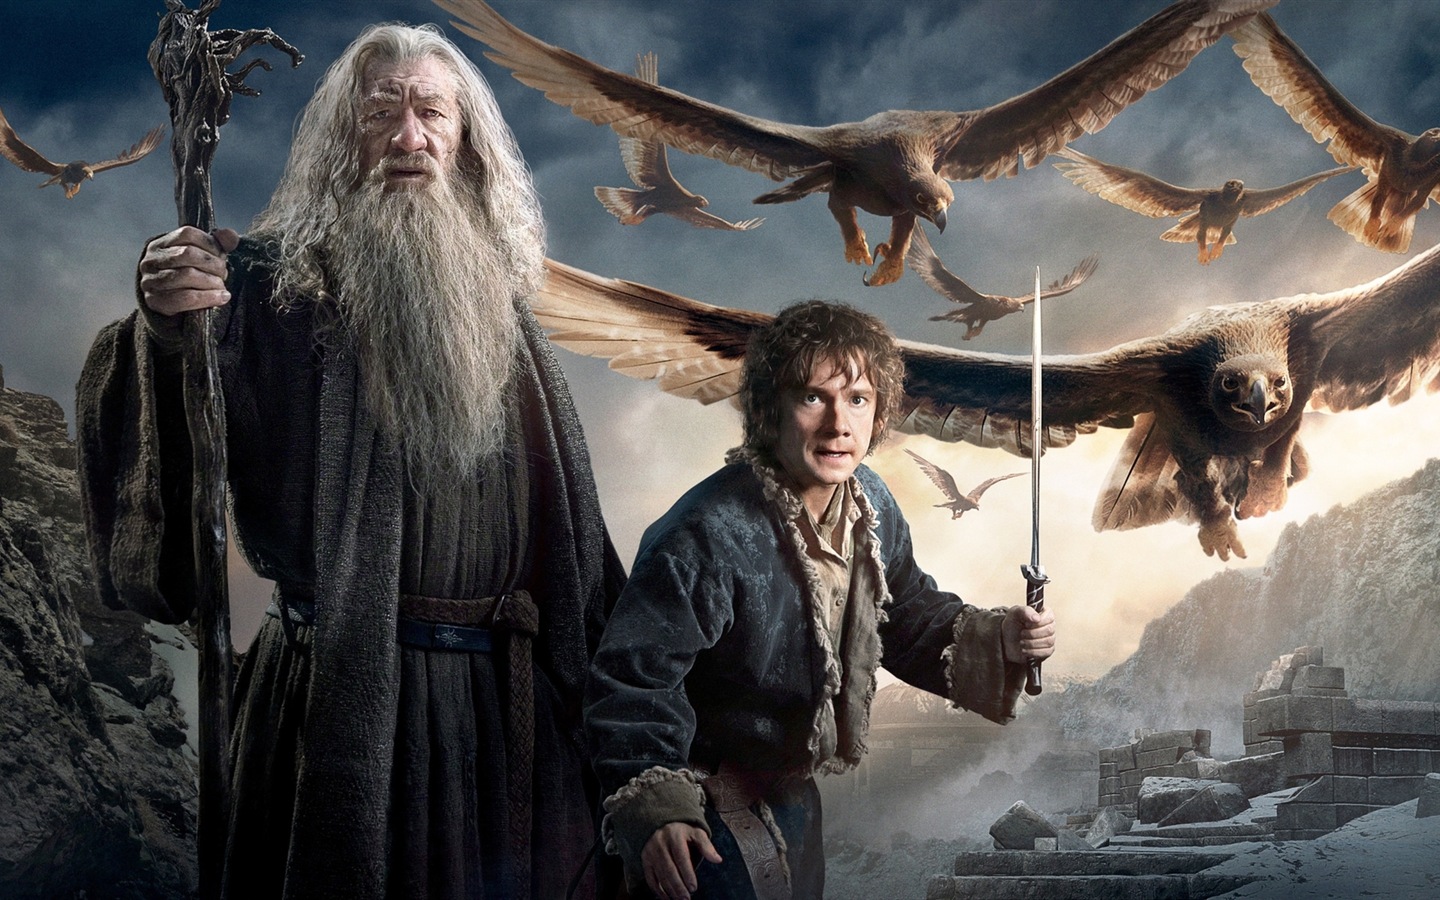 El Hobbit: La Batalla de los Cinco Ejércitos, fondos de pantalla de películas de alta definición #4 - 1440x900